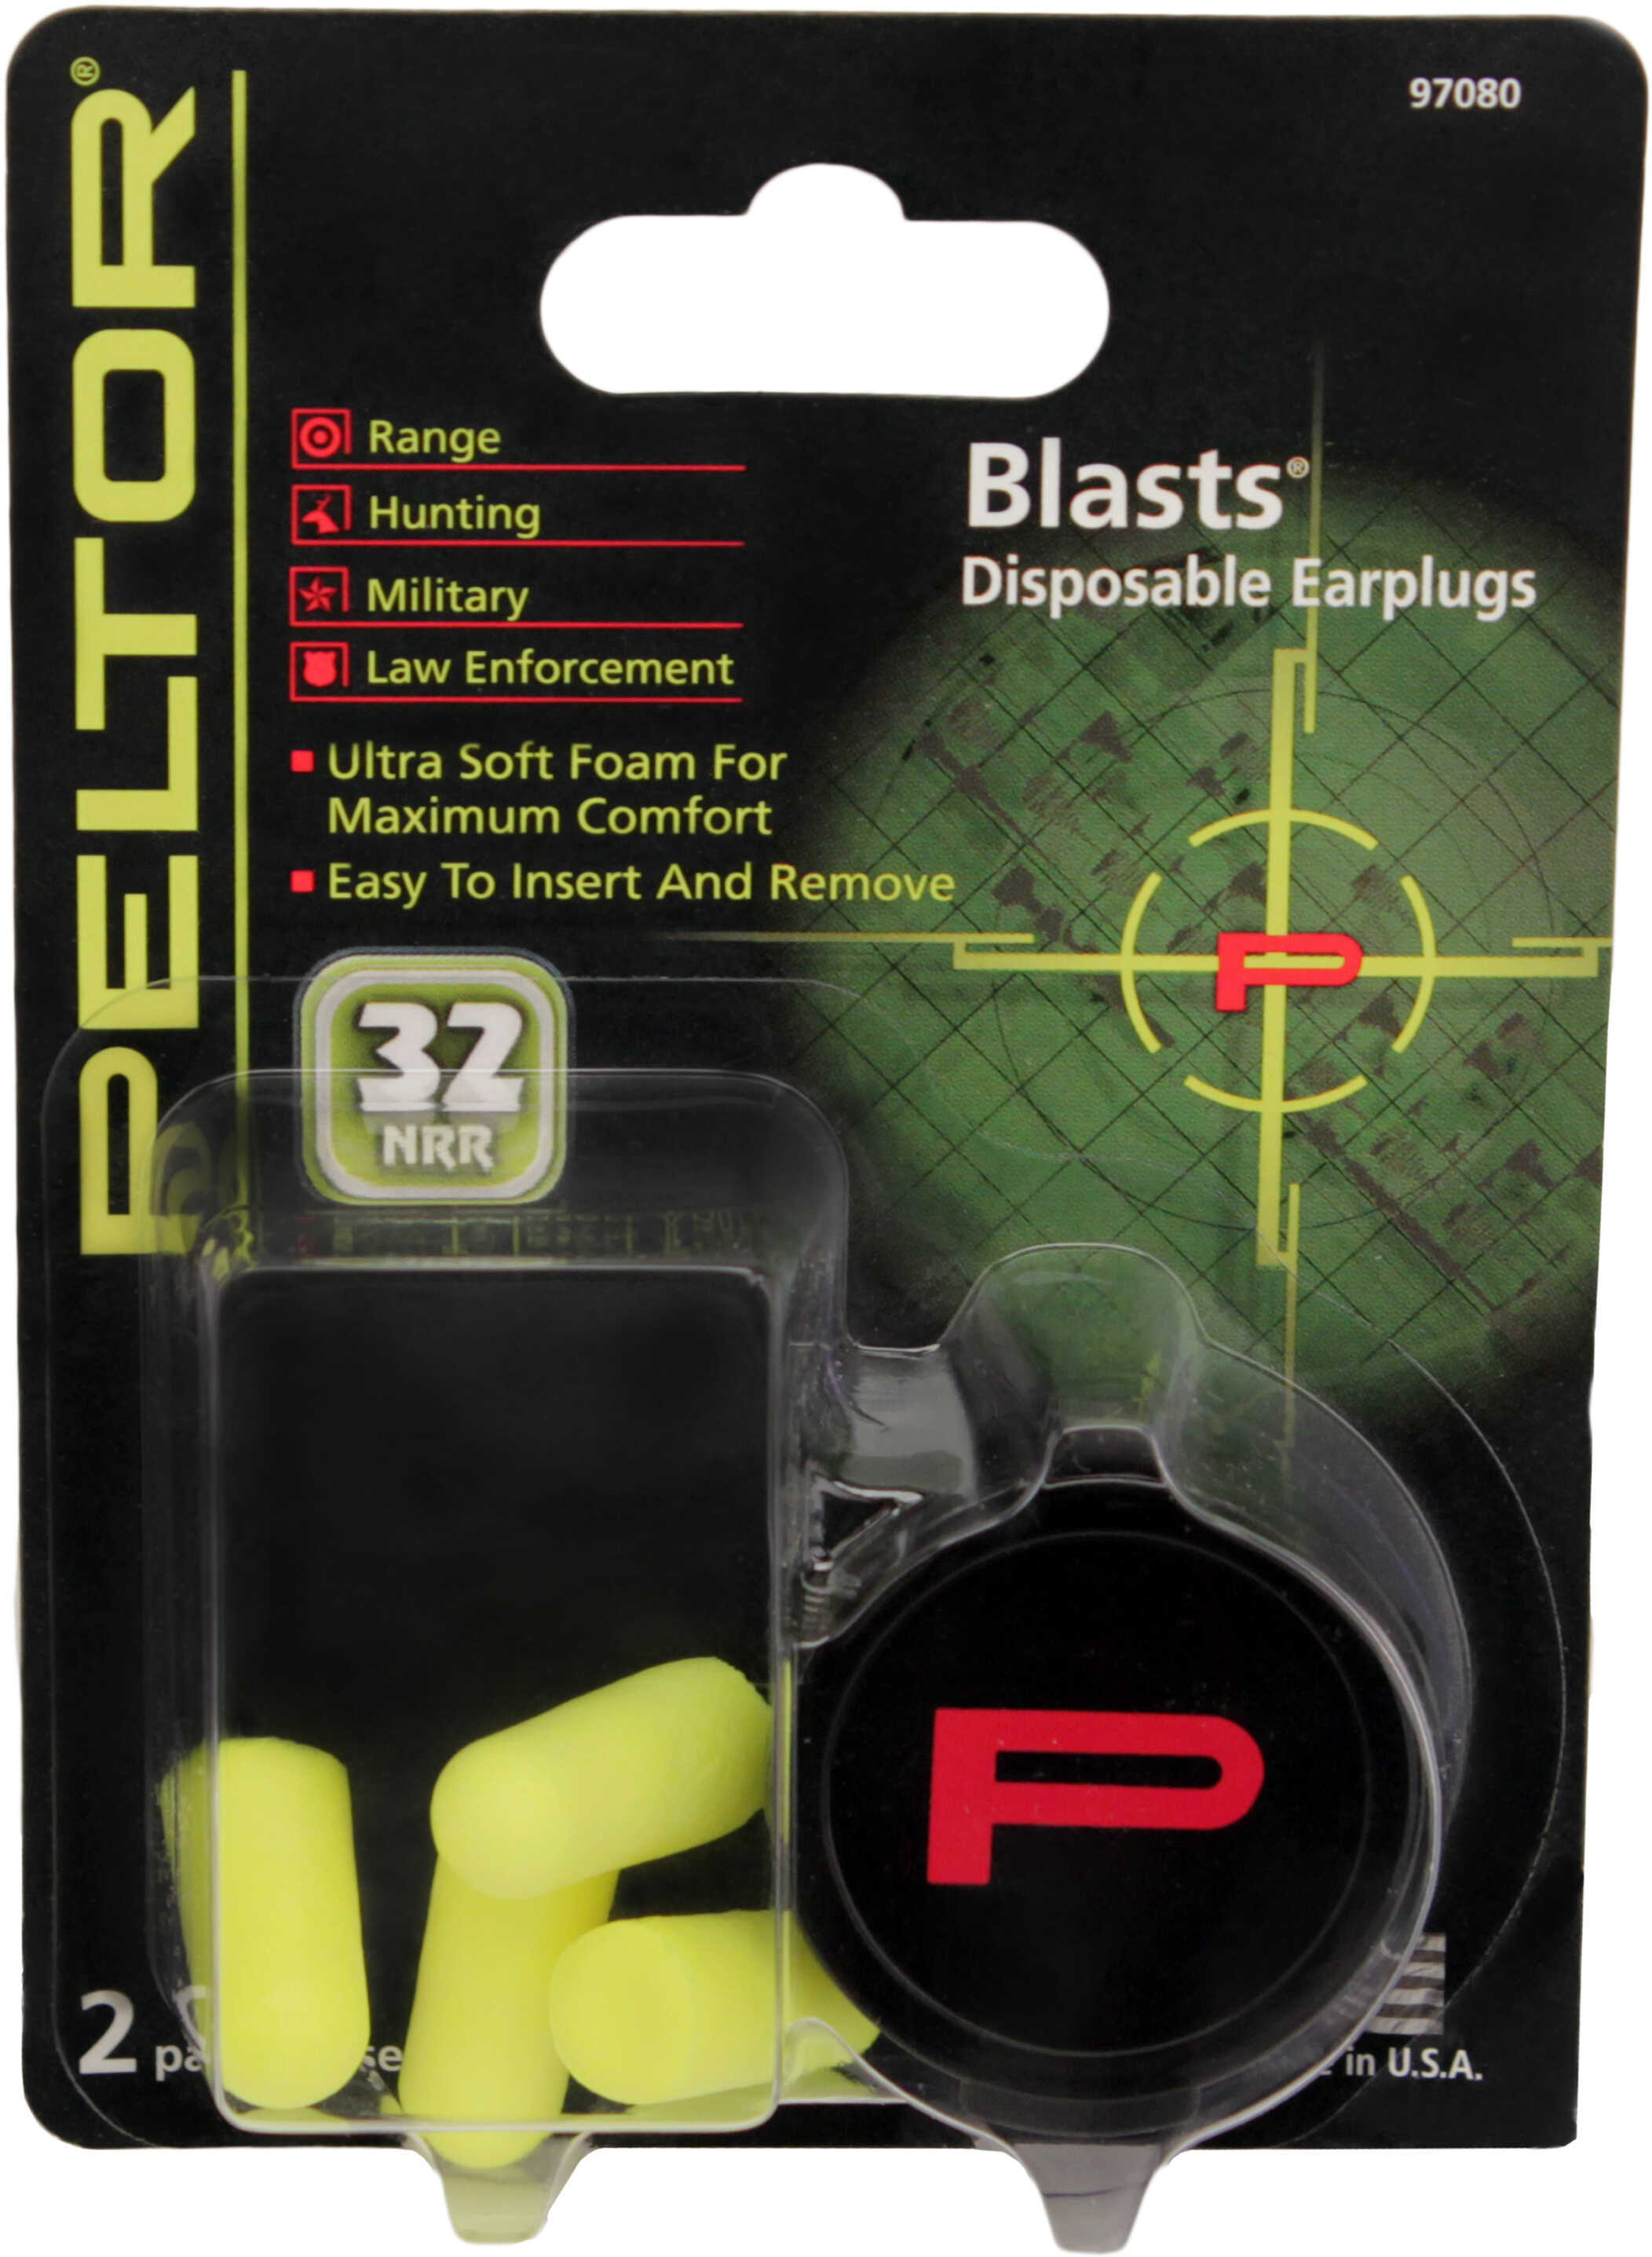 Peltor Blasts Disposable Ear Plugs